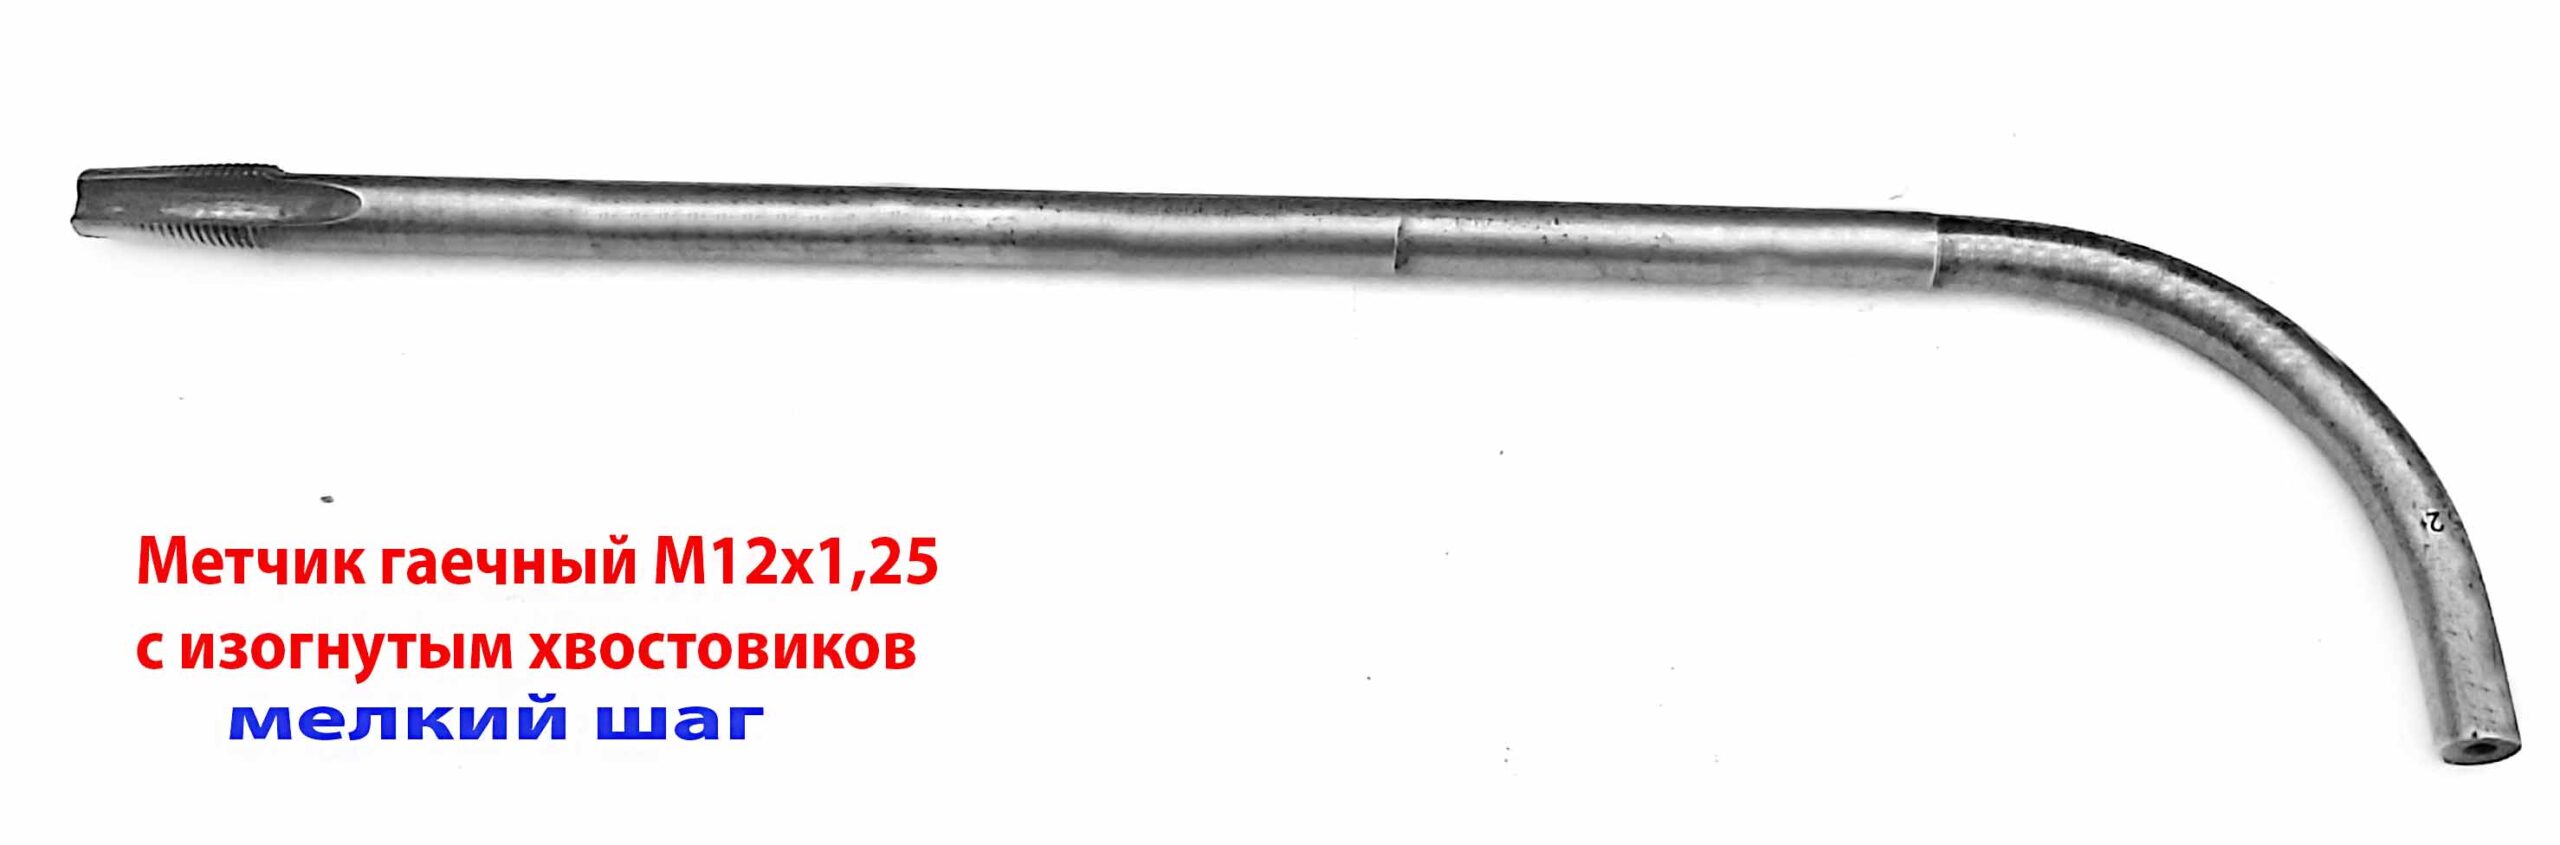 Метчик гаечный М12х1,25 изогнутый хвостовик